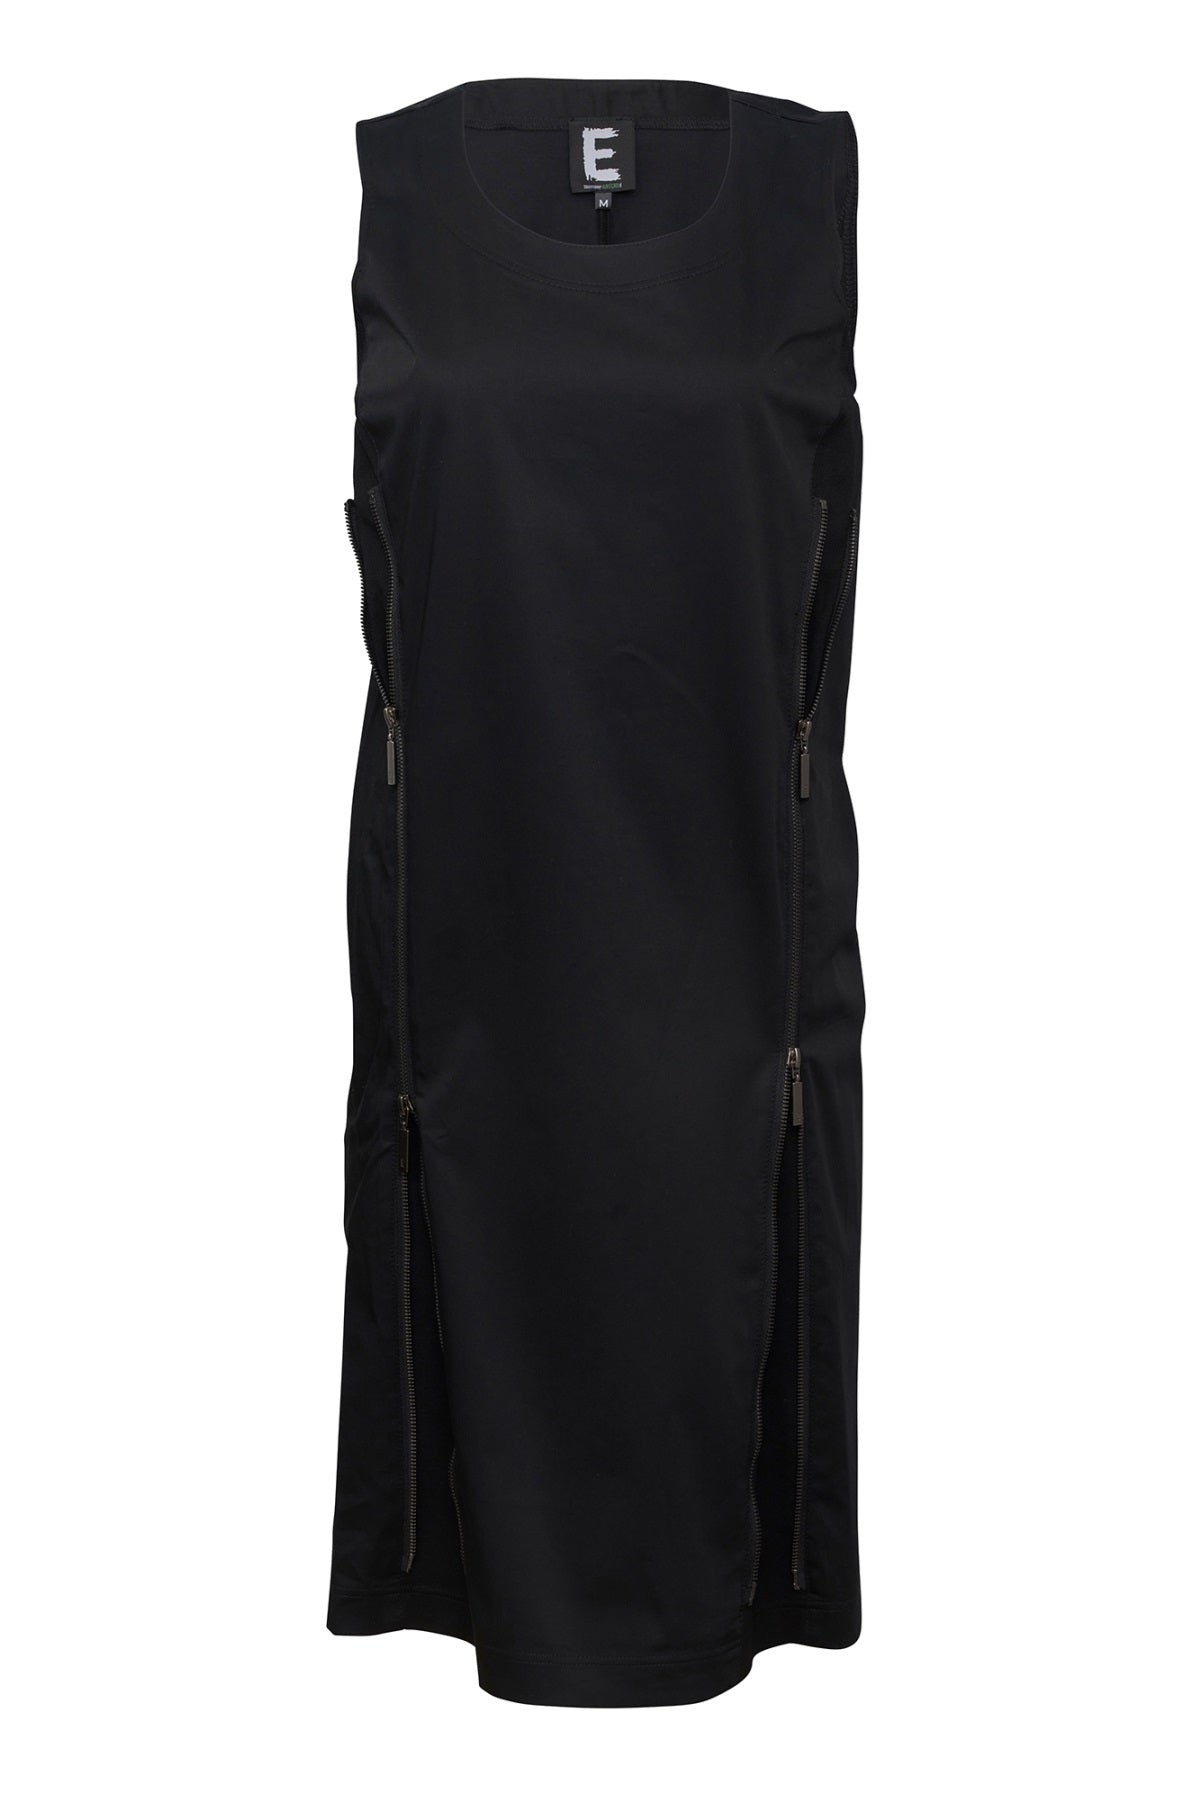 E Avantgarde kjole 14084, Black